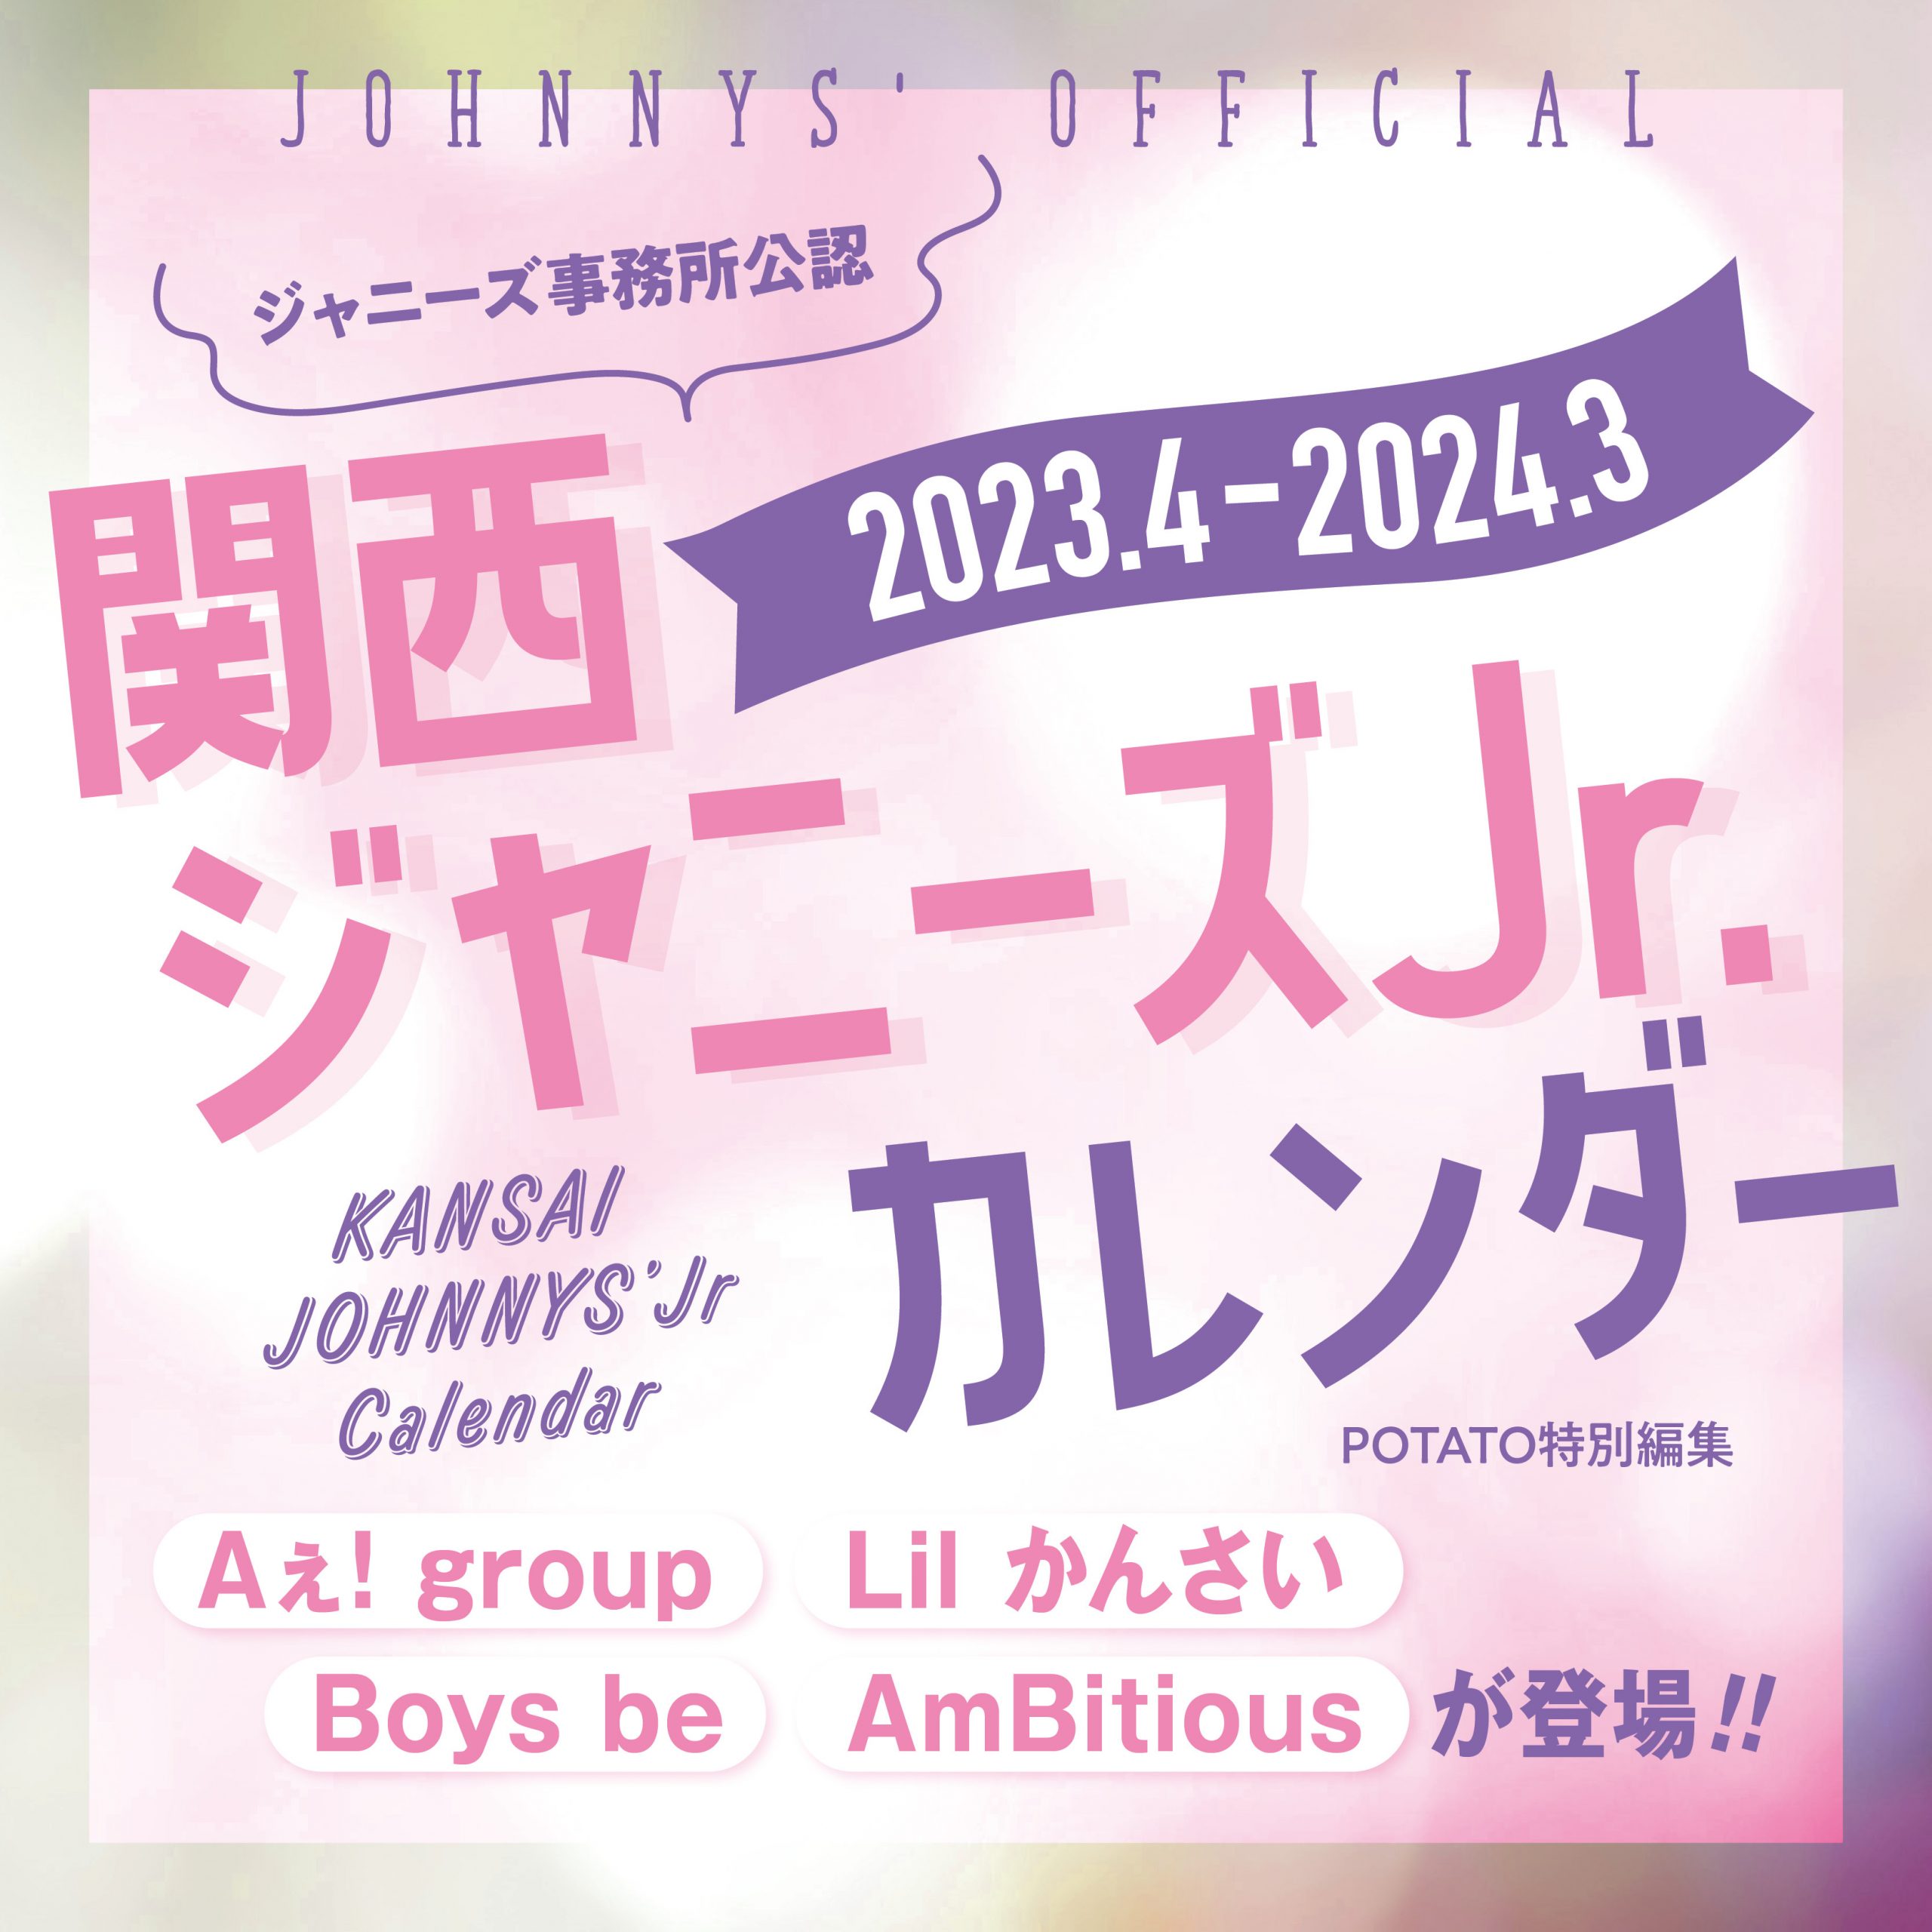 関西ジャニーズJr.カレンダー  2023.4-2024.3